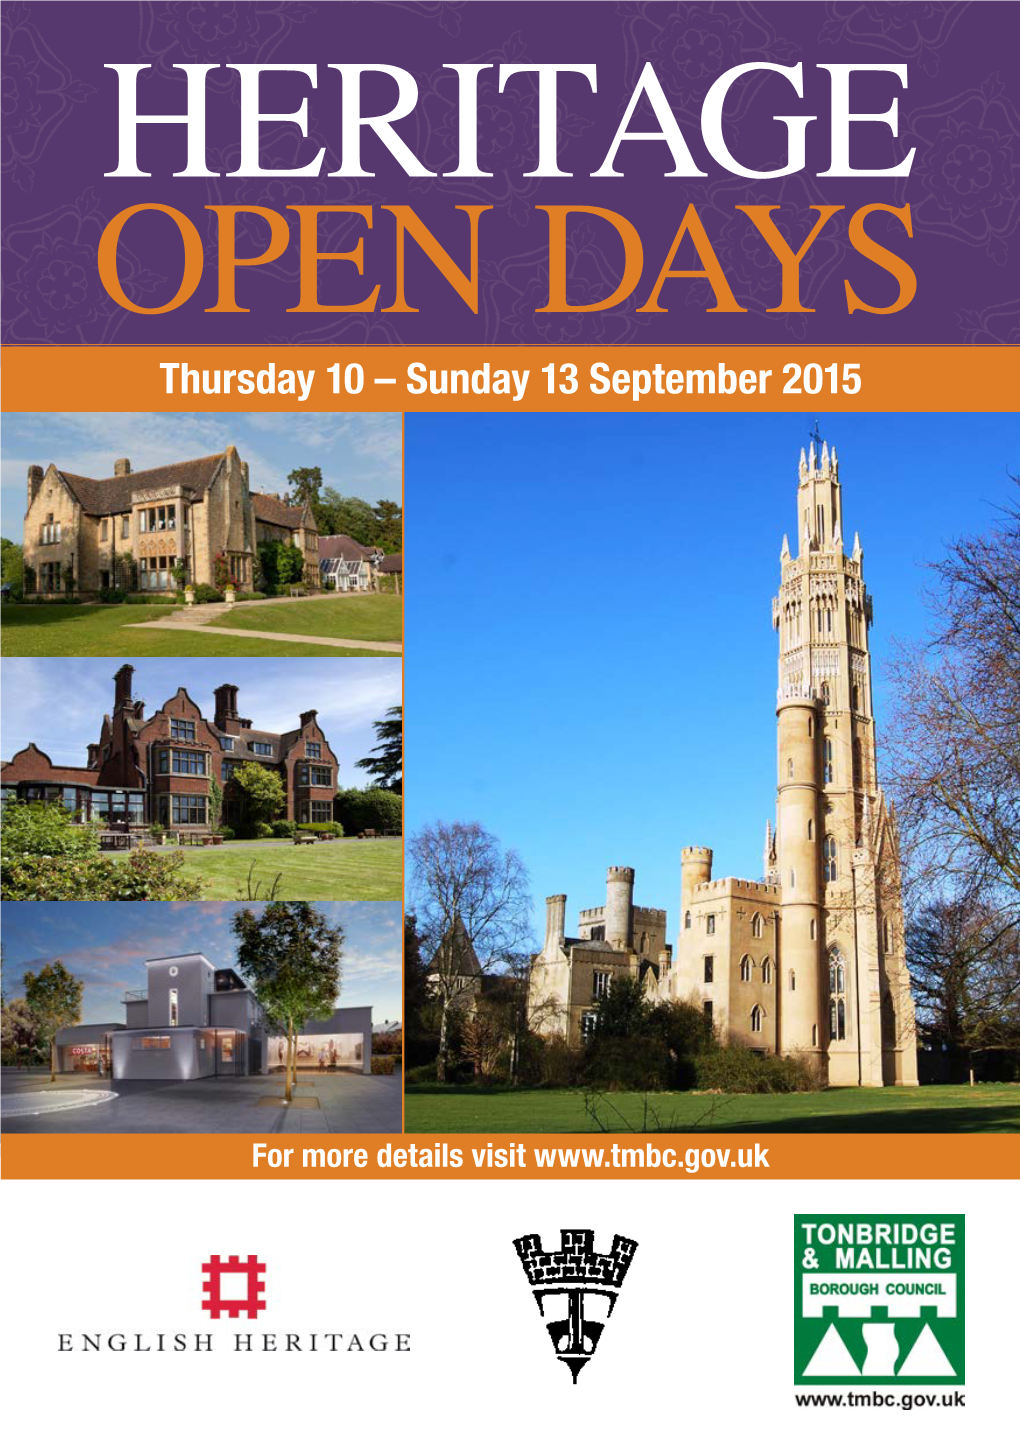 OPEN DAYS Thursday 10 – Sunday 13 September 2015